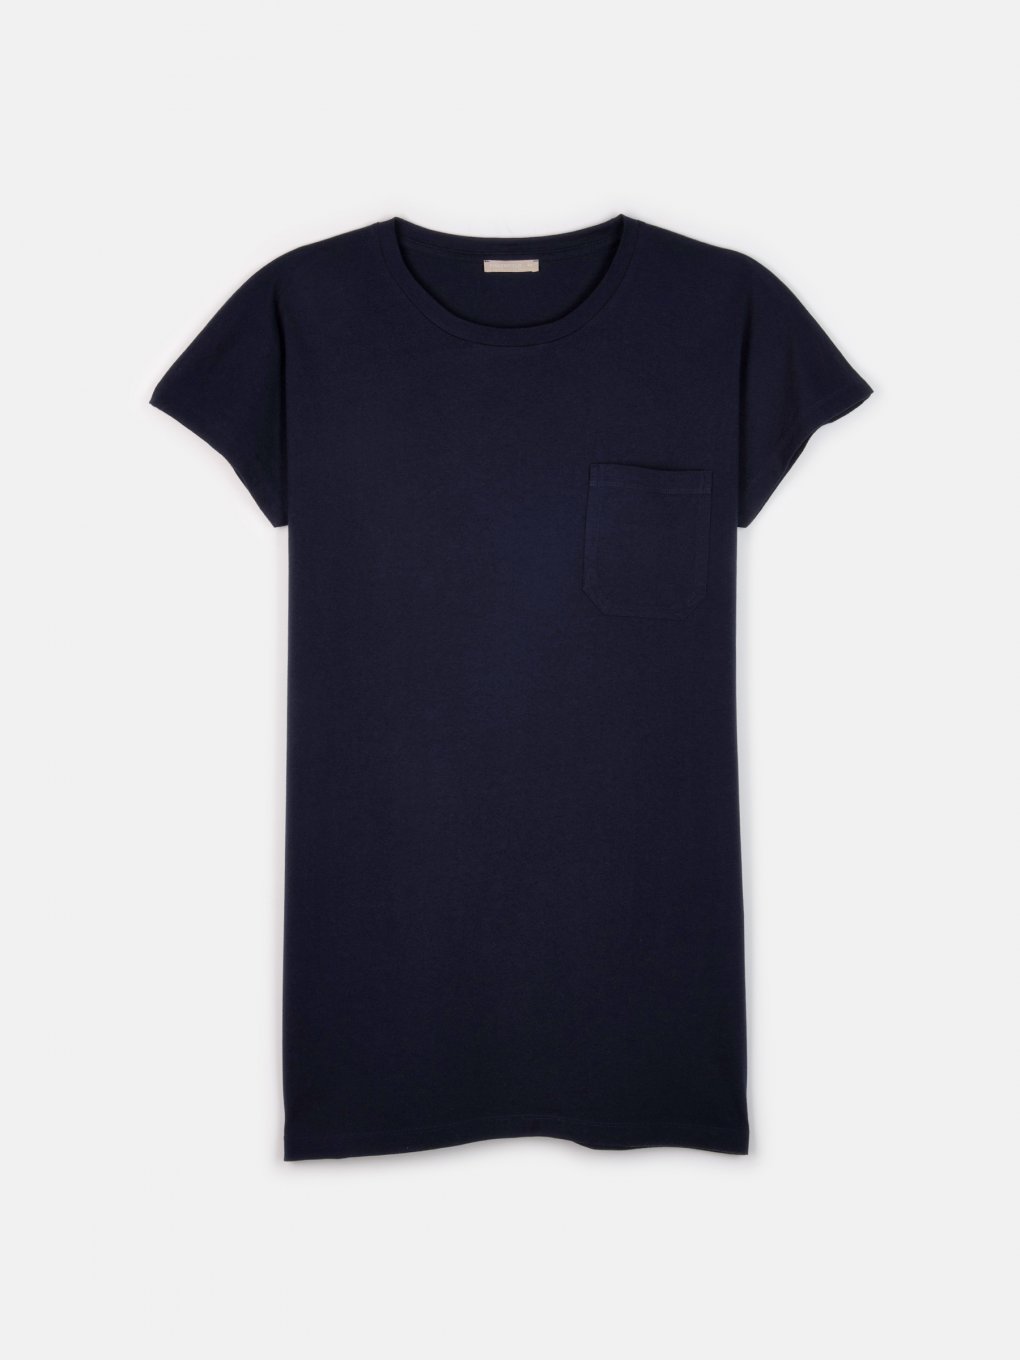 Základní basic tričko s krátkým rukávem dámské plus size